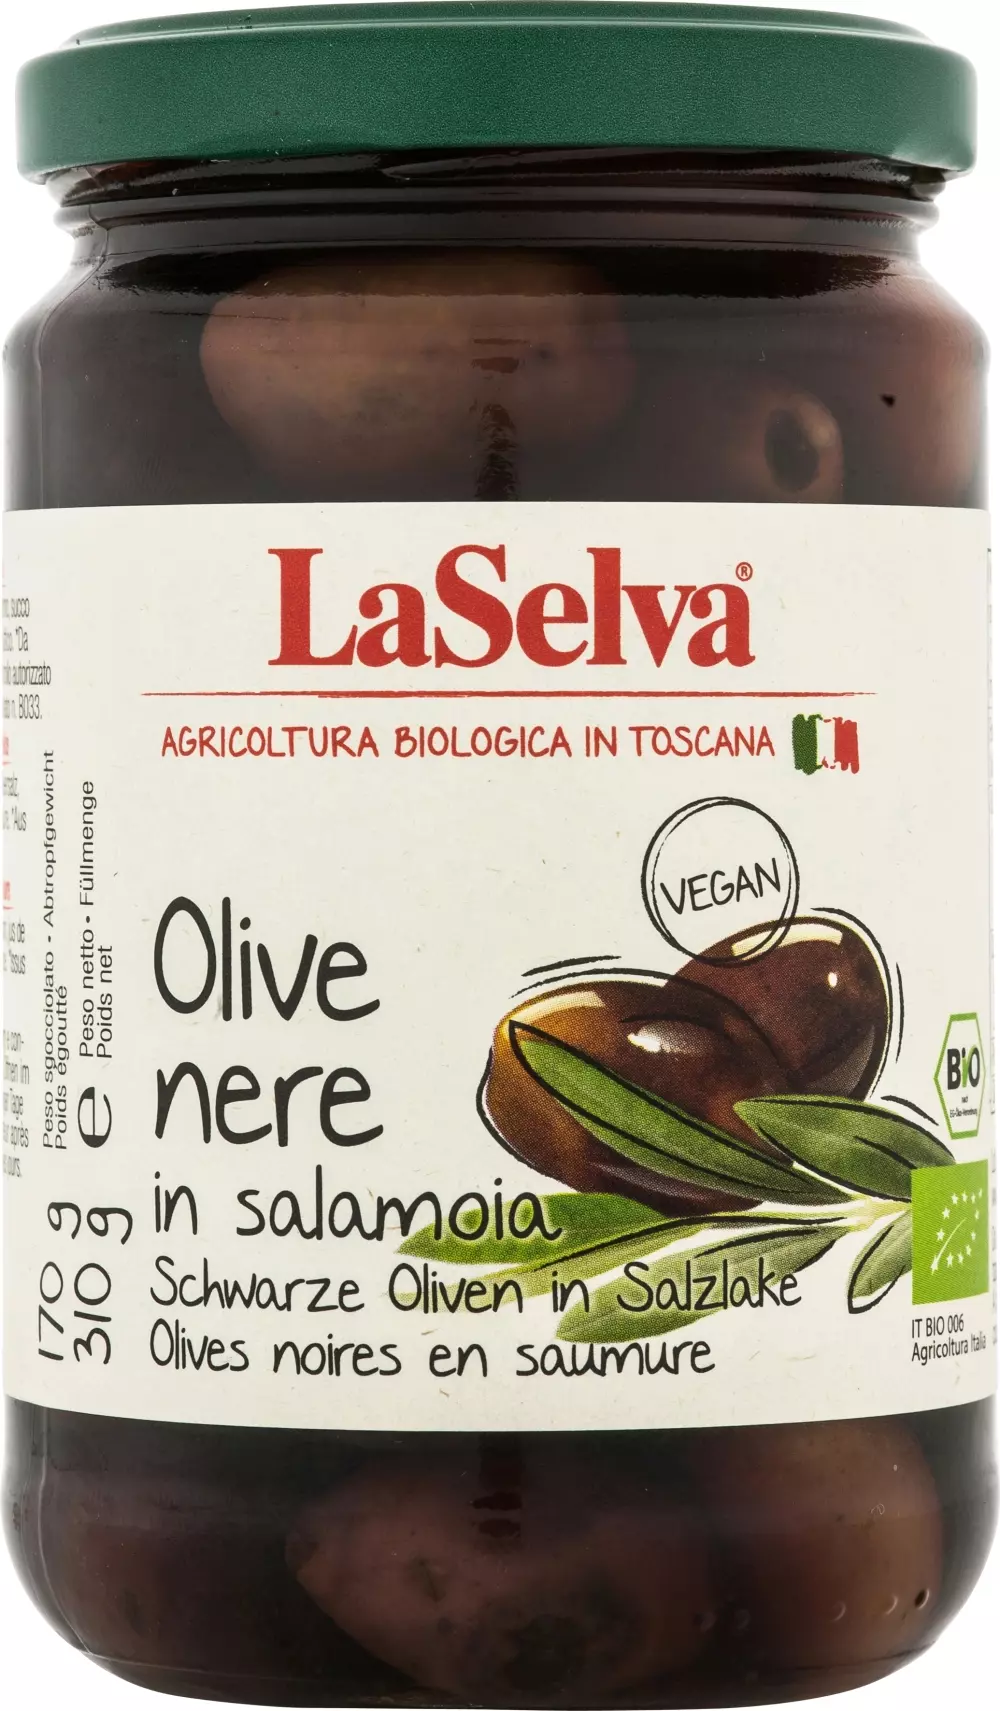 Olive nere 310g. Øko - La Selva, 8053323640127, 8018759001324, Oliven, med sten, La Selva Bio, 240057, Svarte oliven 310g. Øko - La Selva